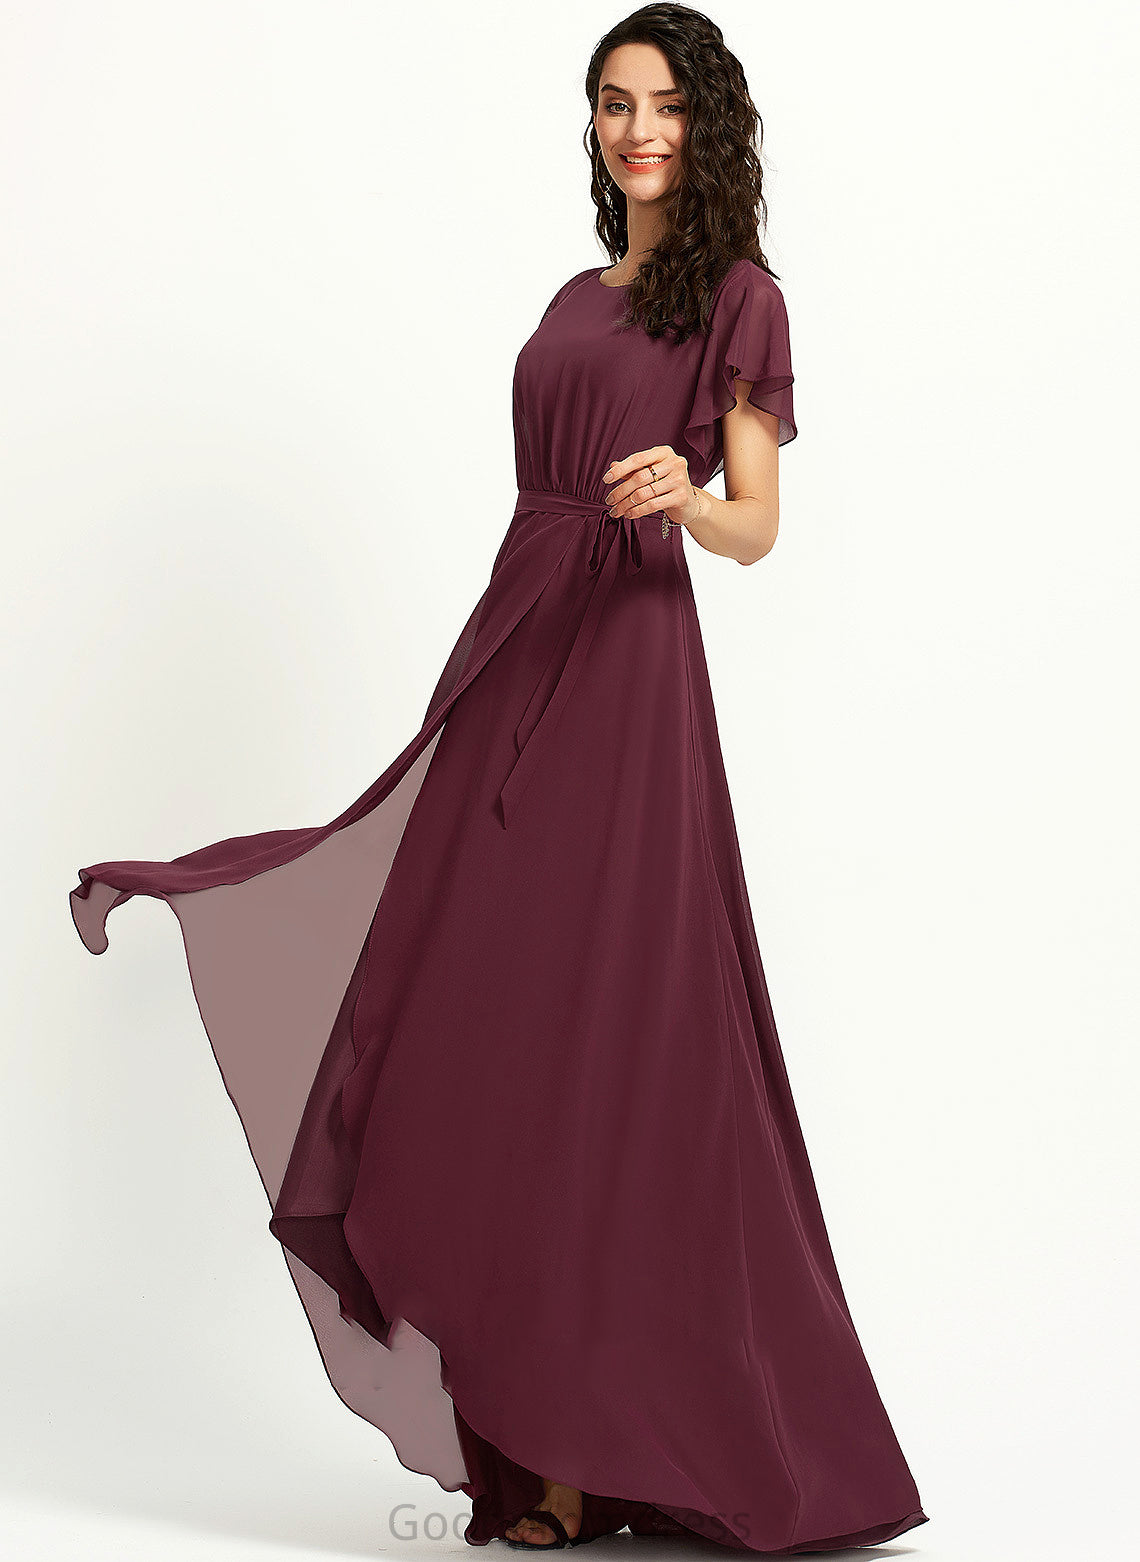 Ruffle A-Line Fabric ScoopNeck Silhouette Embellishment Asymmetrical Length Neckline Aria A-Line/Princess Floor Length Bridesmaid Dresses